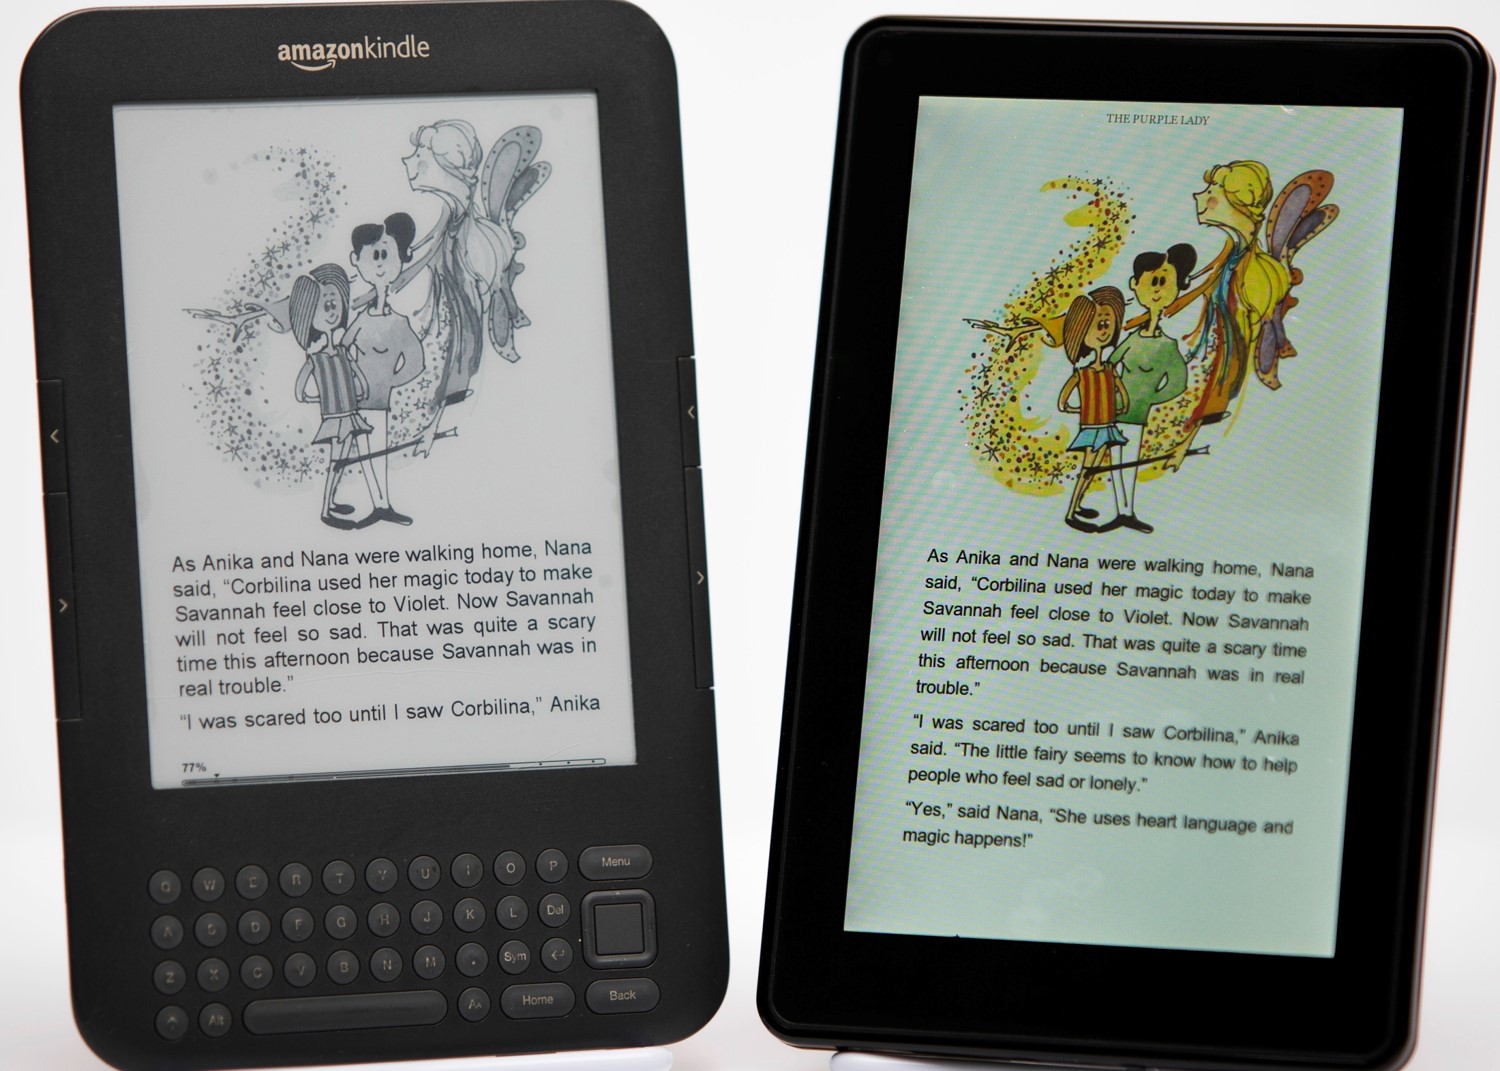 Kindle Ebooks: Amazoncouk